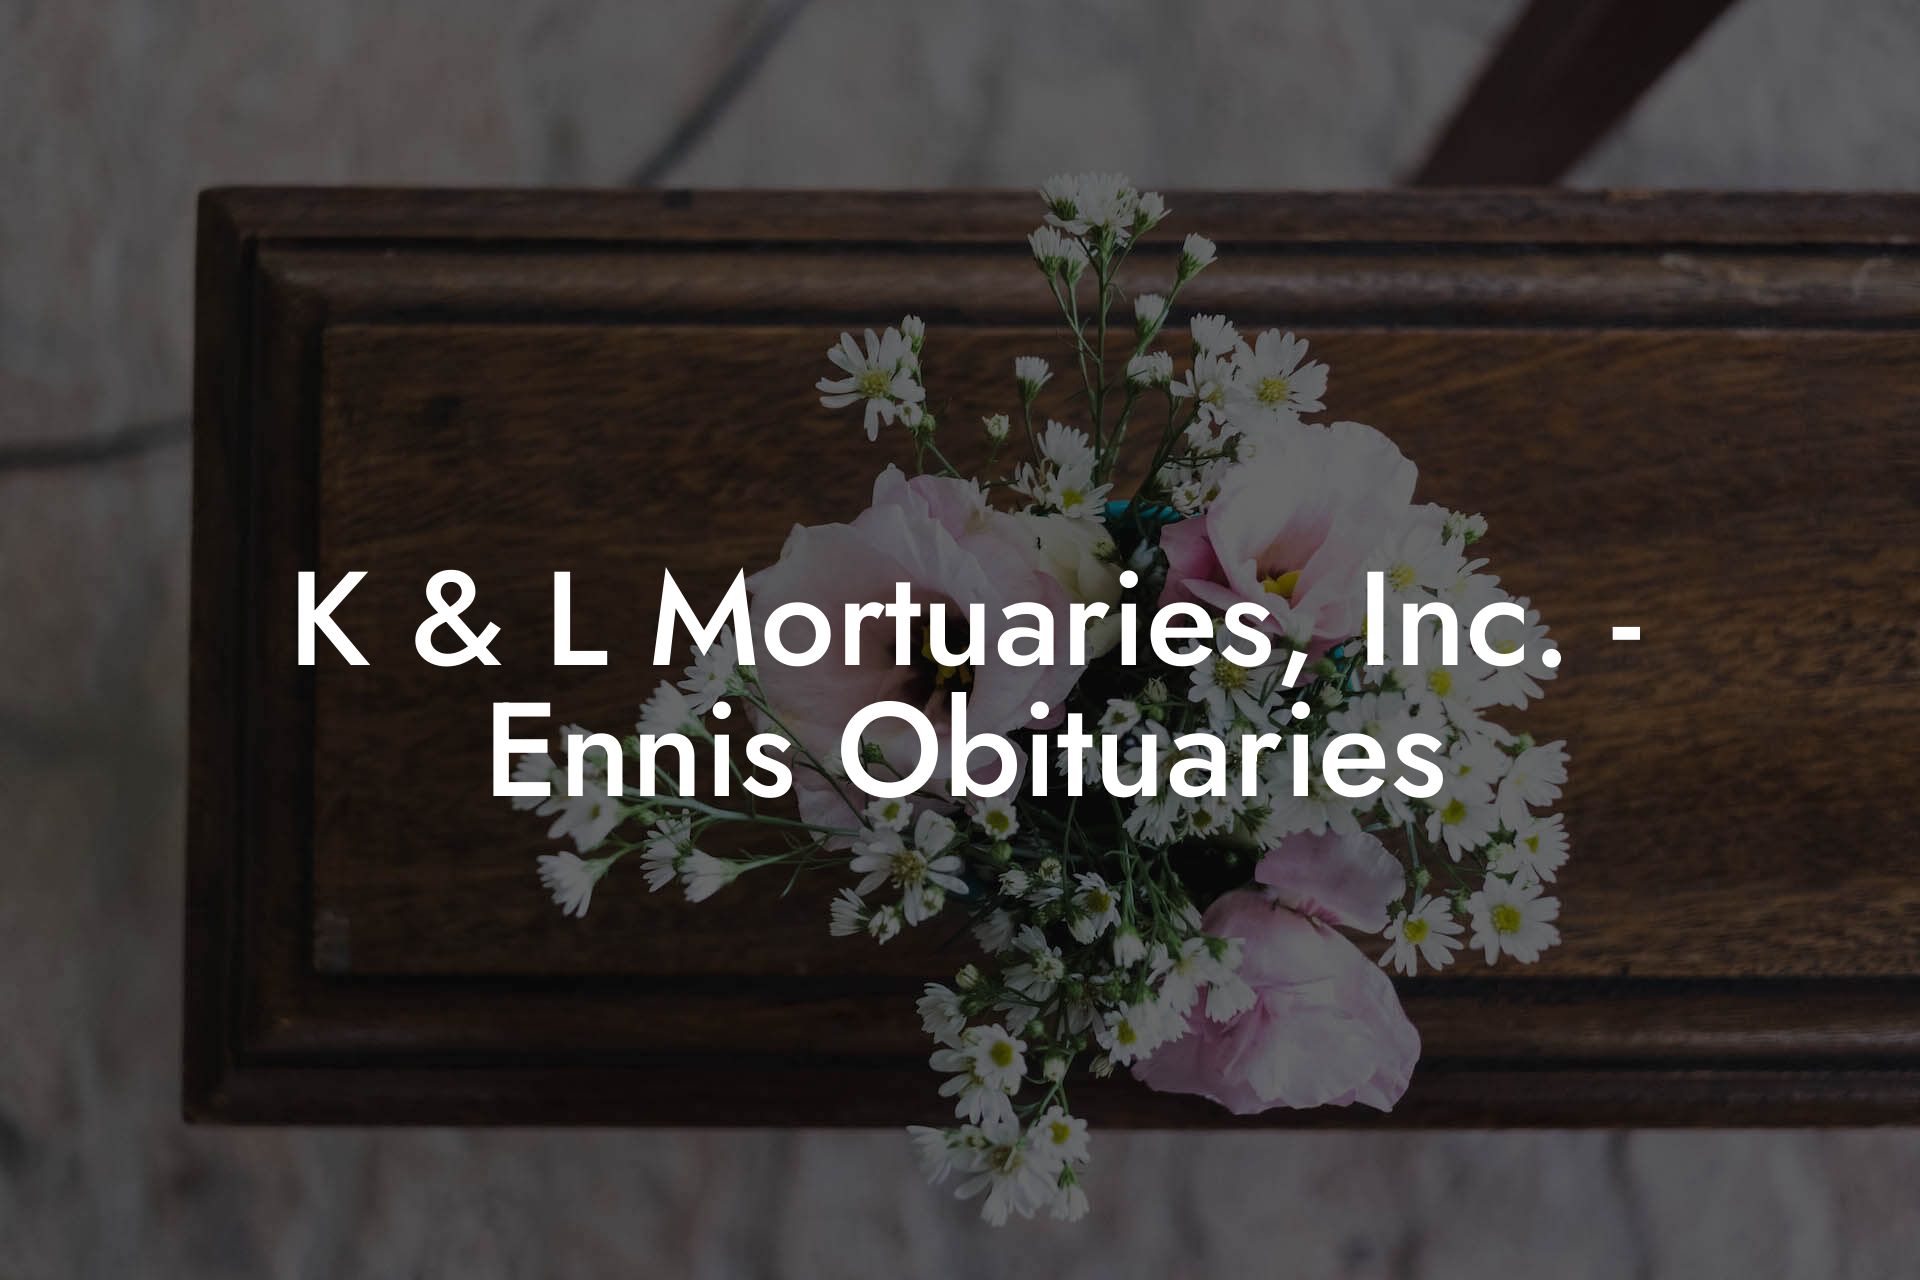 K & L Mortuaries, Inc. - Ennis Obituaries